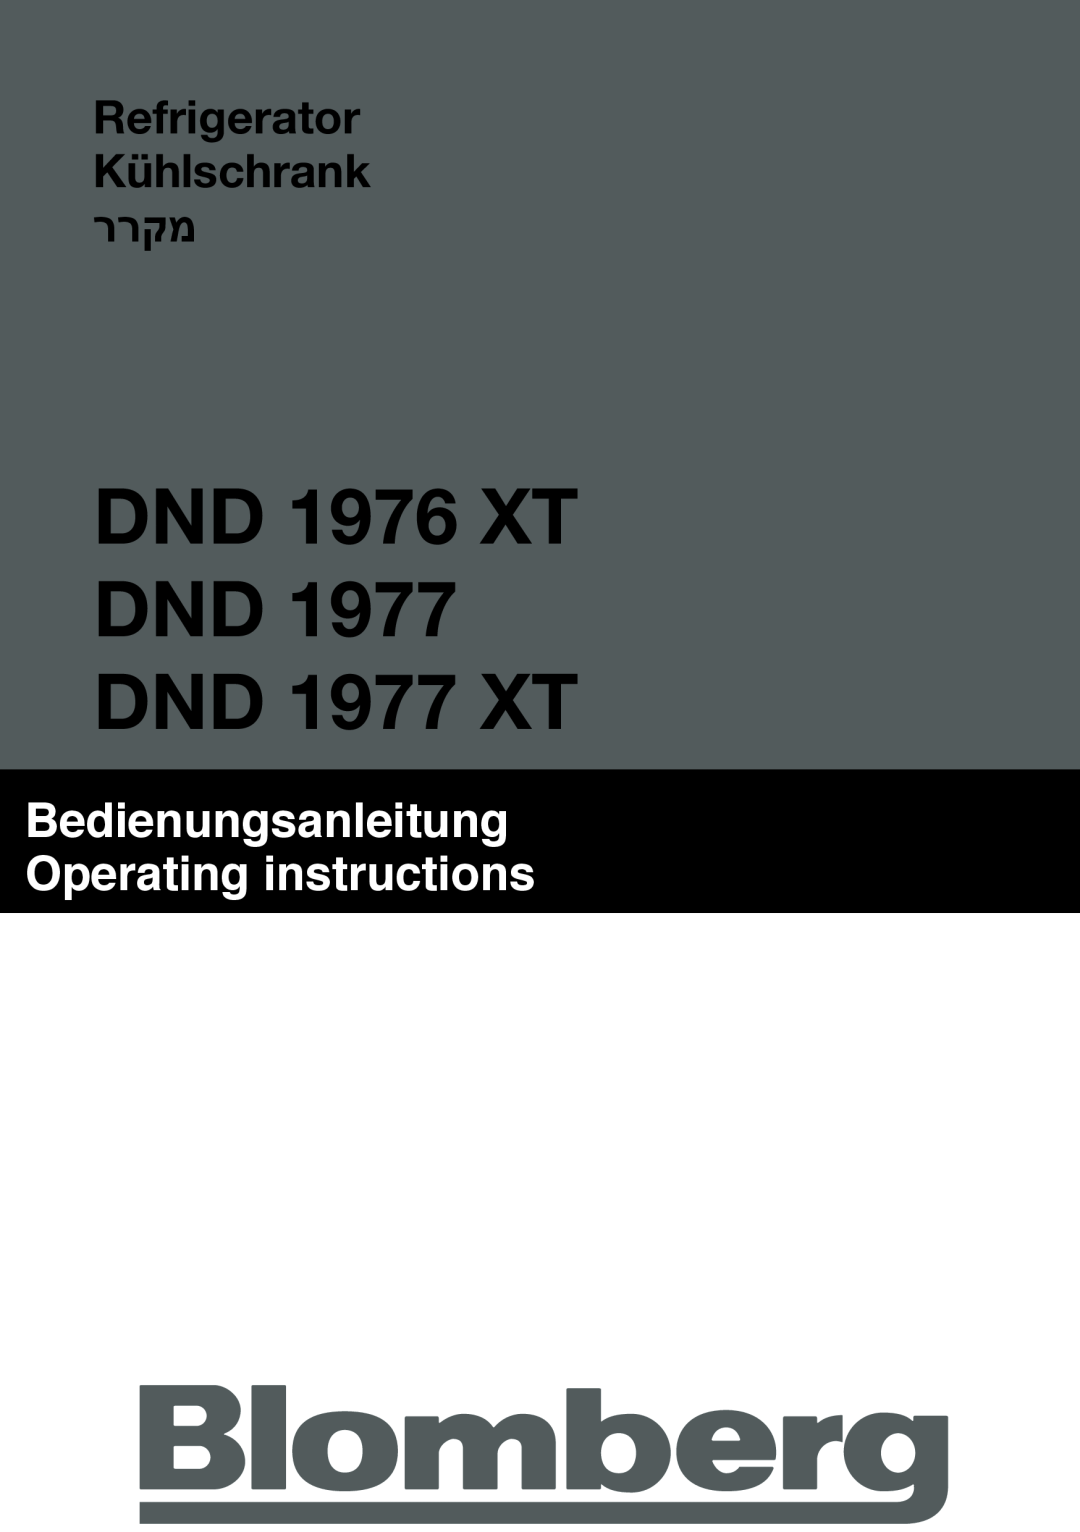 Blomberg manual DND 1976 XT DND 1977 DND 1977 XT, Bedienungsanleitung Operating instructions 